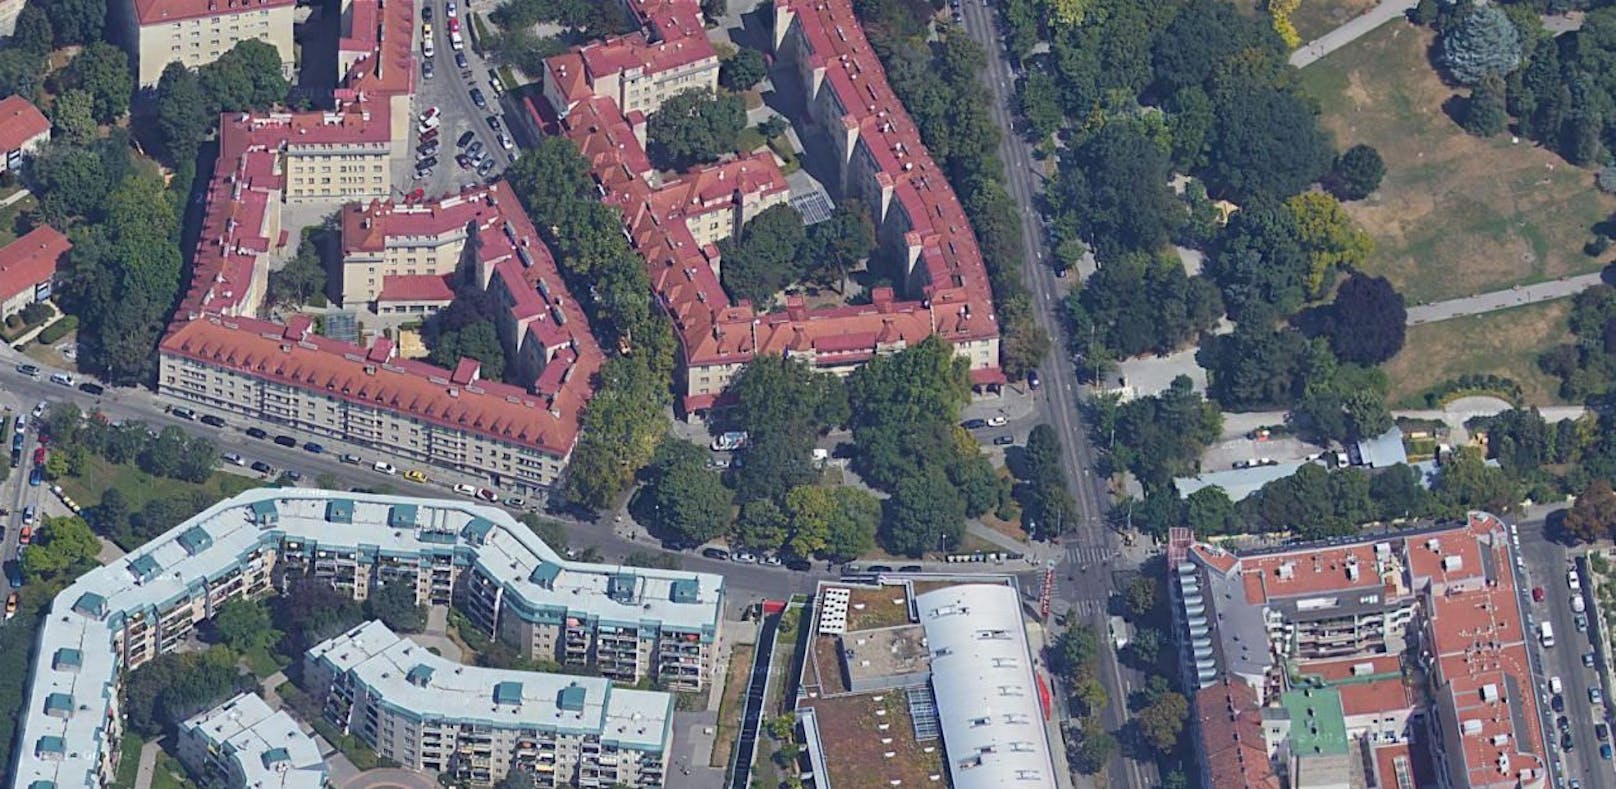 Ein Zimmerbrand in Wien-Ottakring fordert einen Toten.